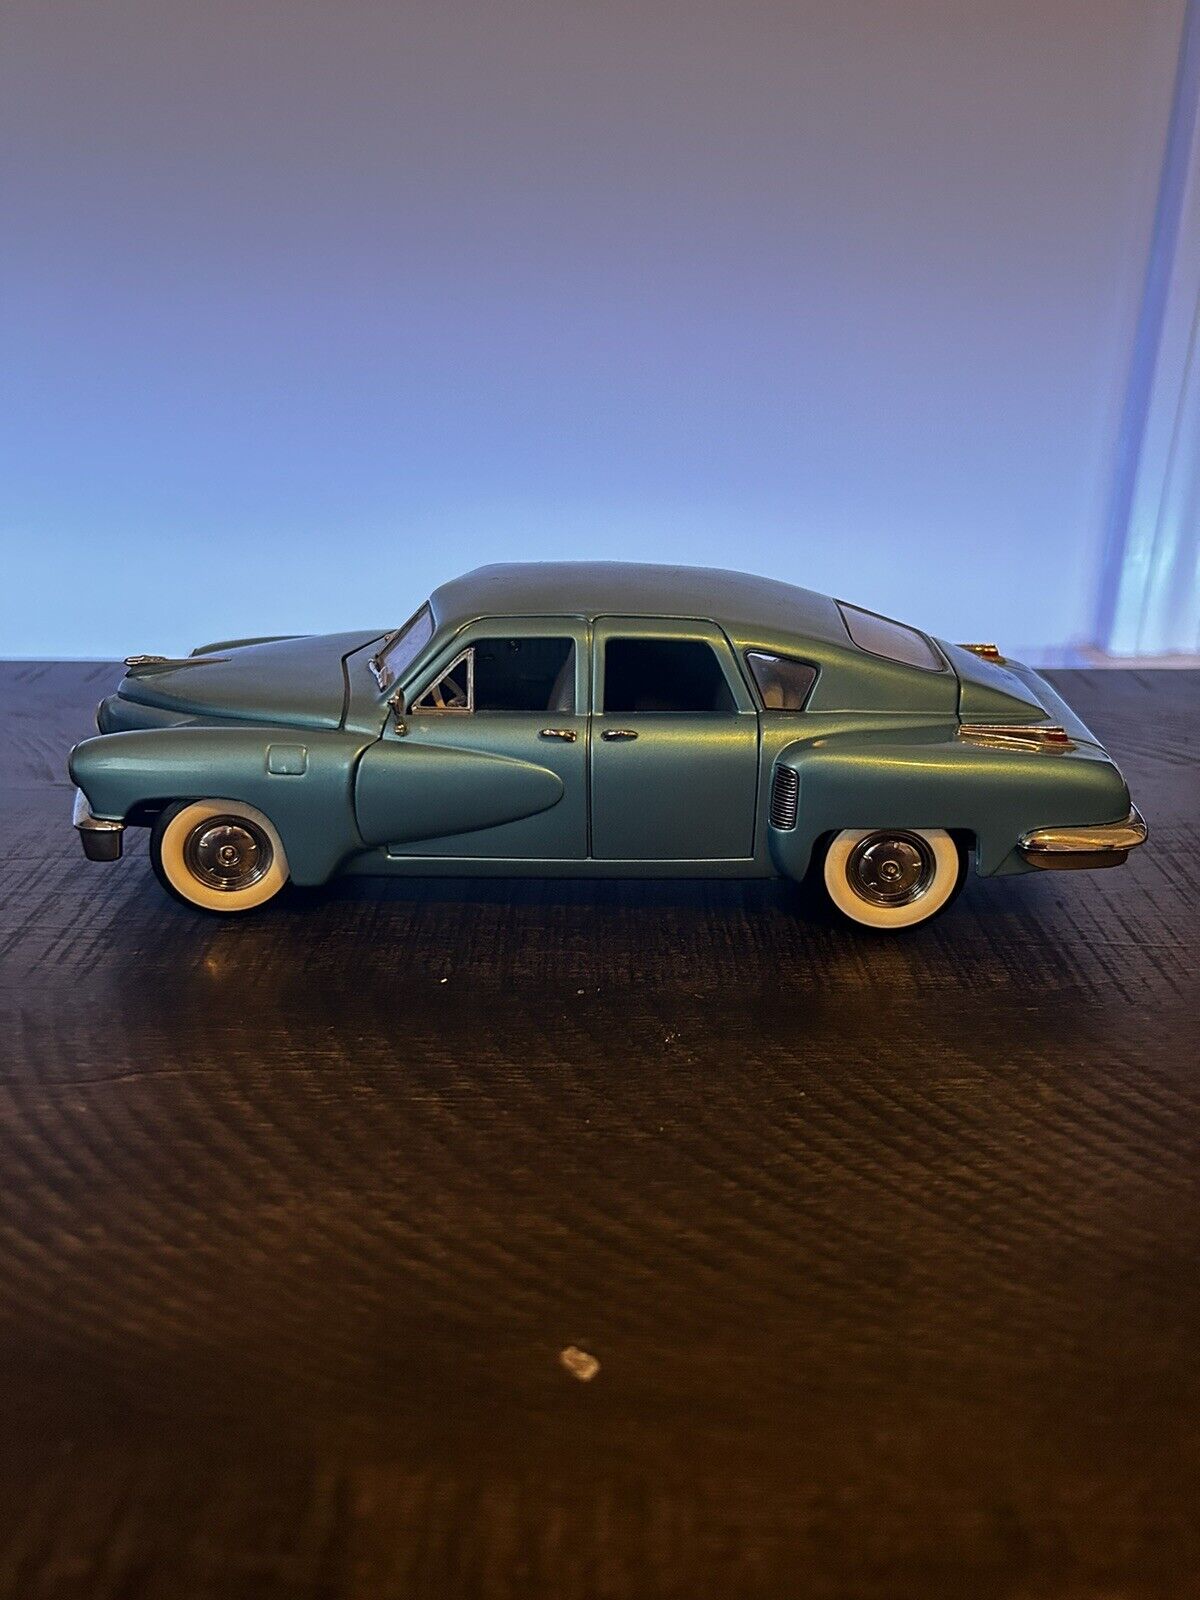 RARE 1948 TUCKER Franklin Mint Precision MODEL CAR